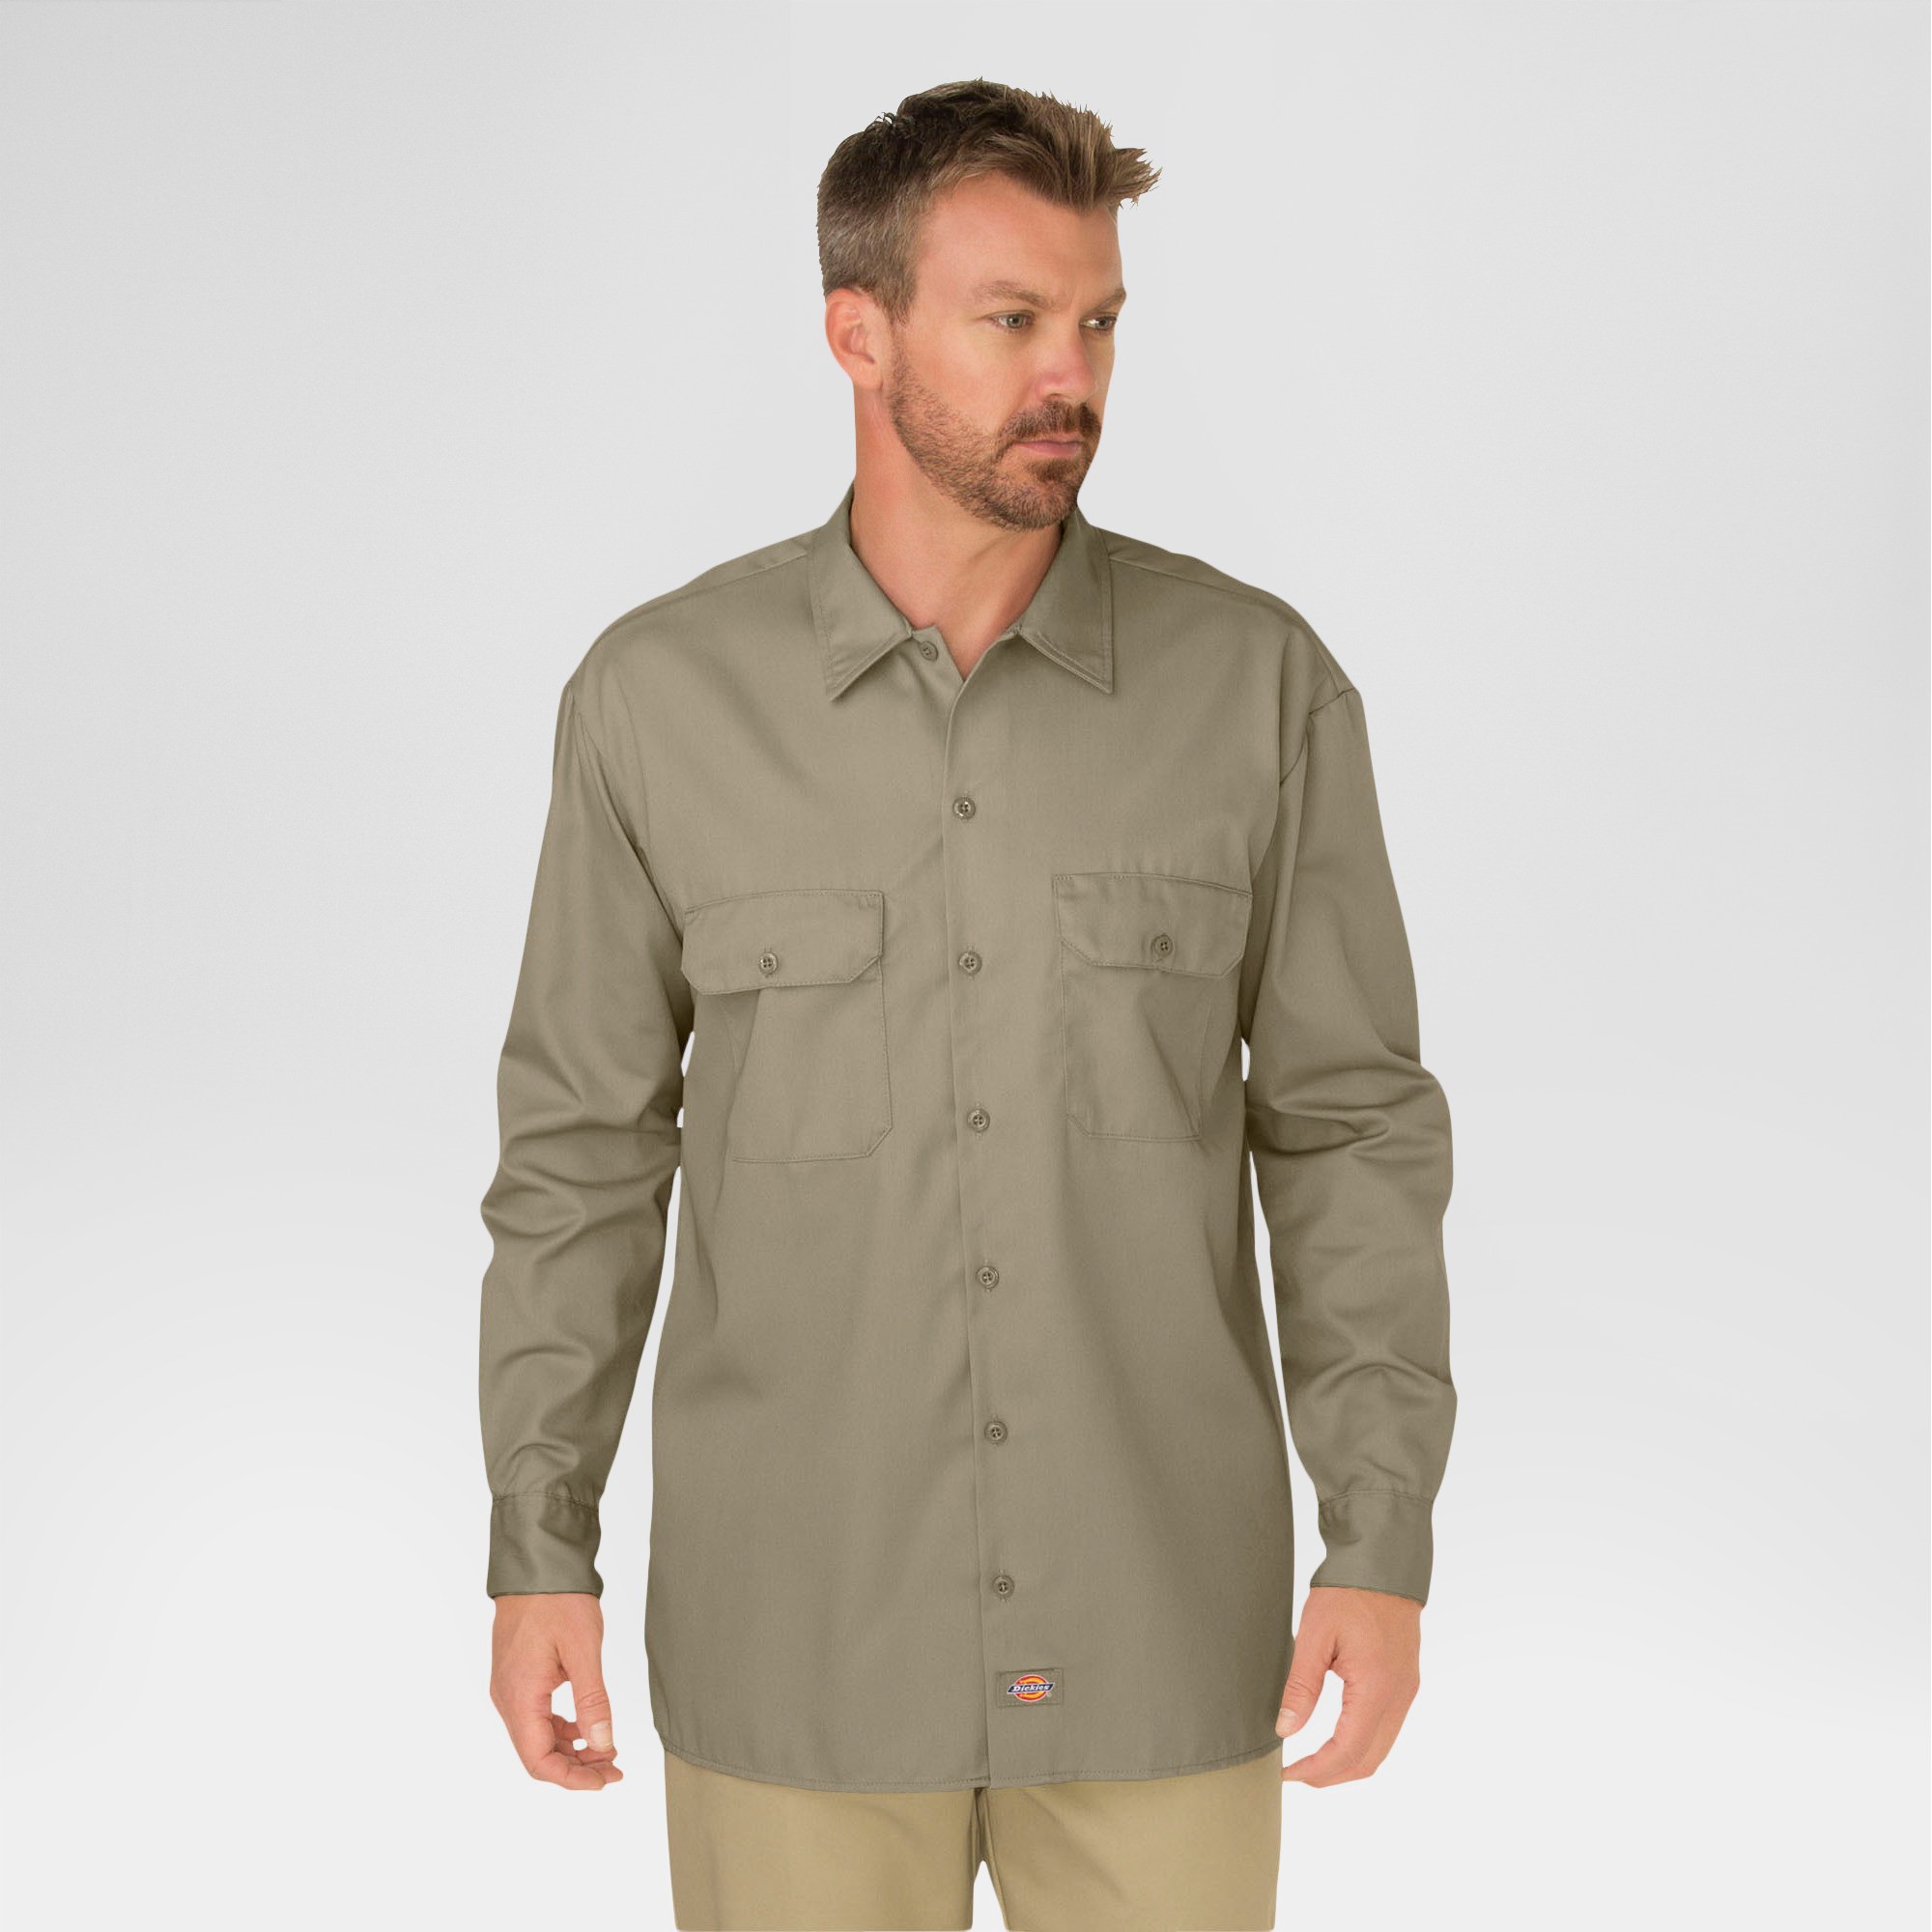 Dickies Men's Big & Tall Original Fit Long Sleeve Twill Work Shirt- Khaki XXXL, Green